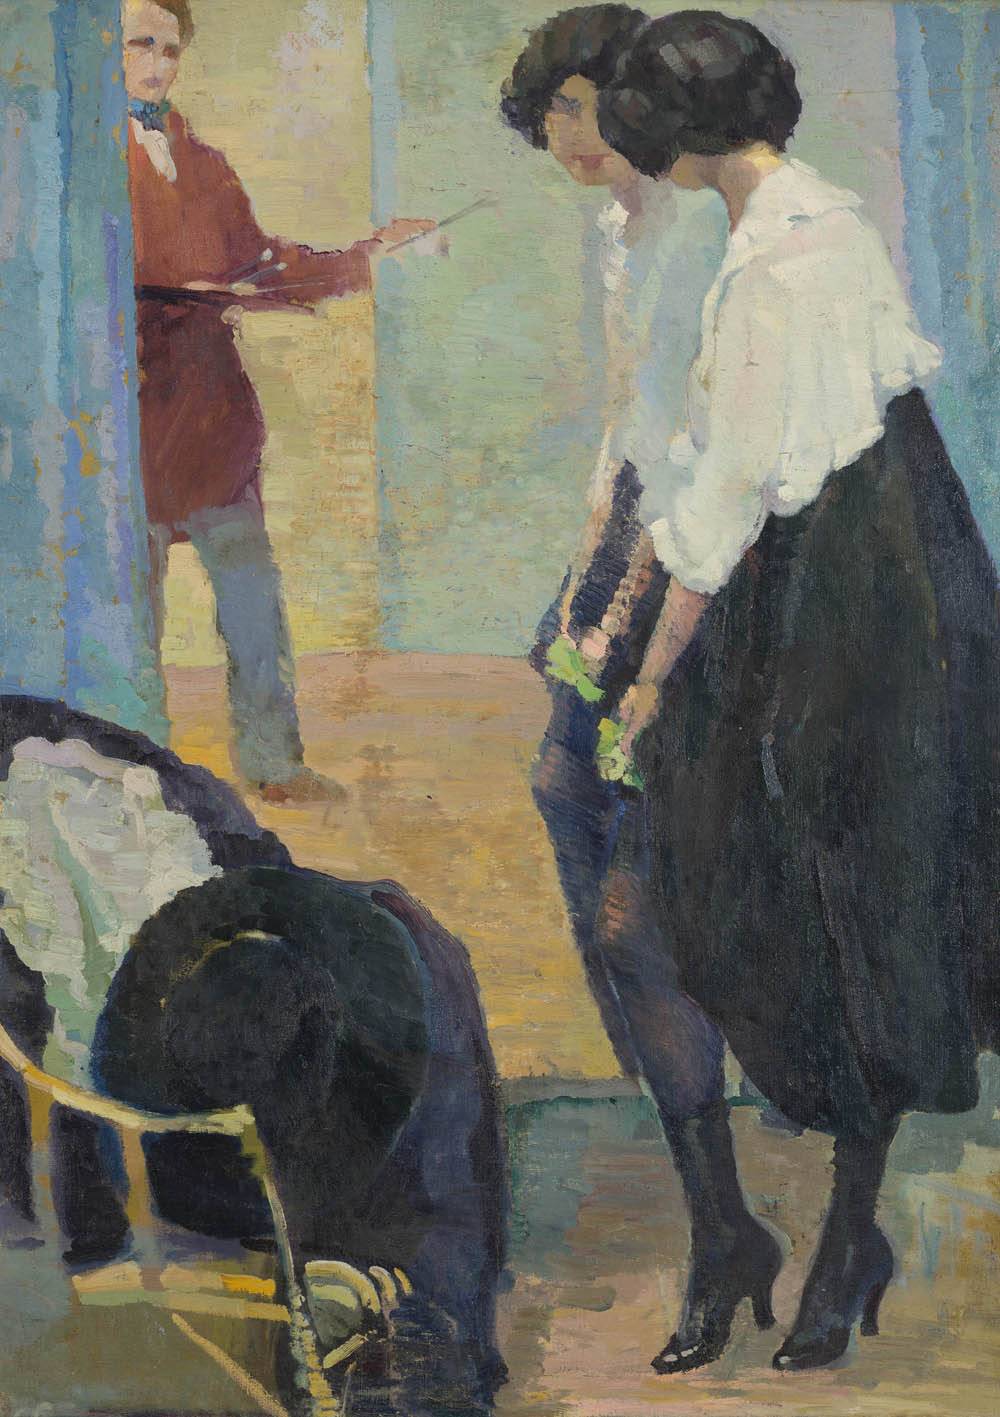 En el taller, 1916. Guillermo Laborde (1886-1940). Óleo sobre tela.  130 x 96 cm. Nº inv. 1796.